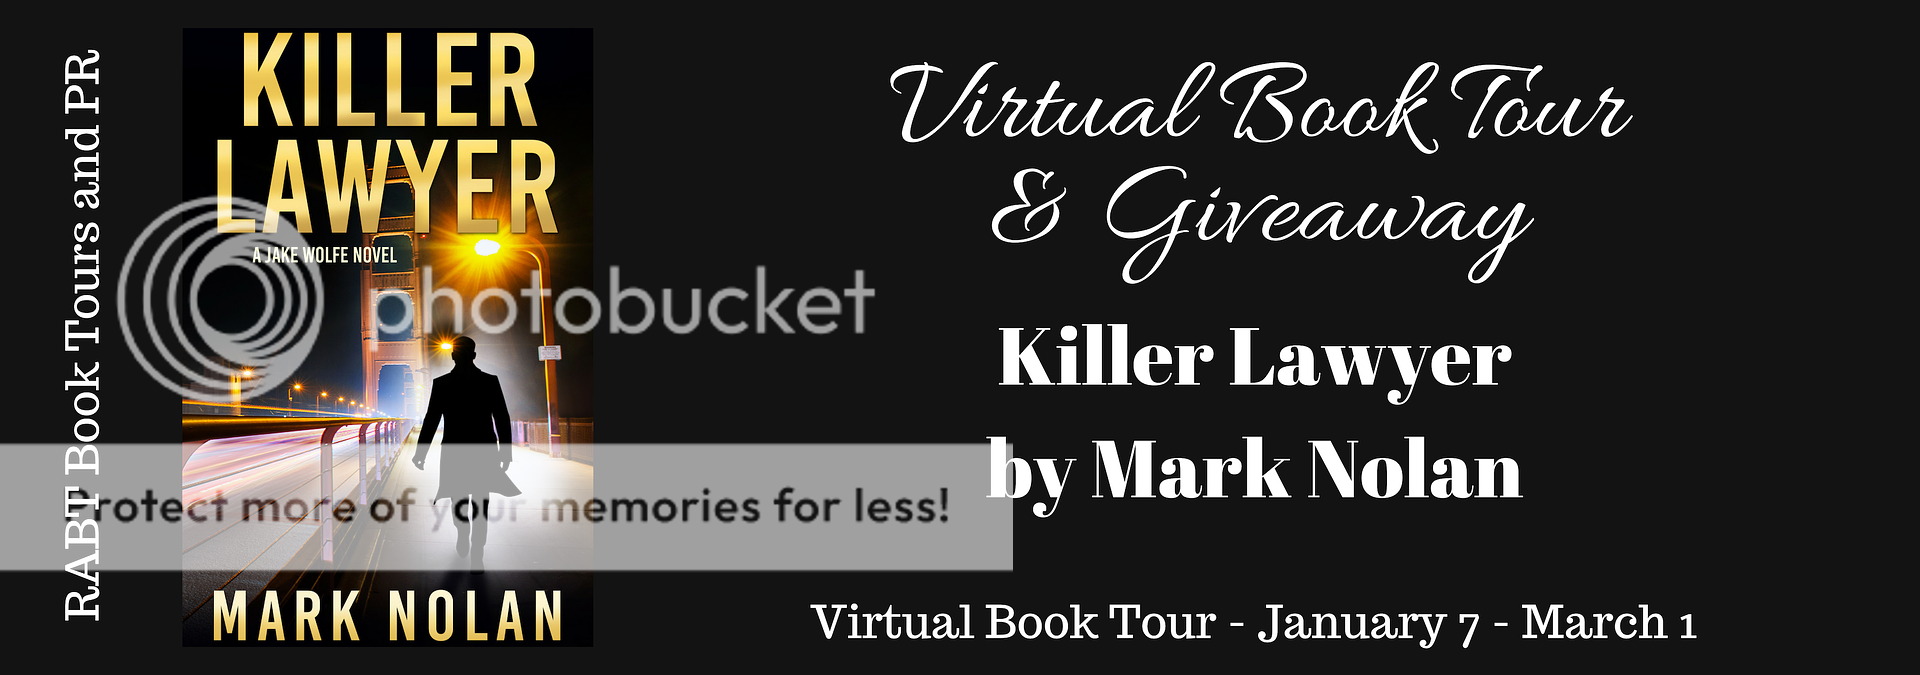 Virtual Book Tour: Killer Lawyer by Mark Nolan @marknolan #thriller #giveaway #booktour @RABTBookTours